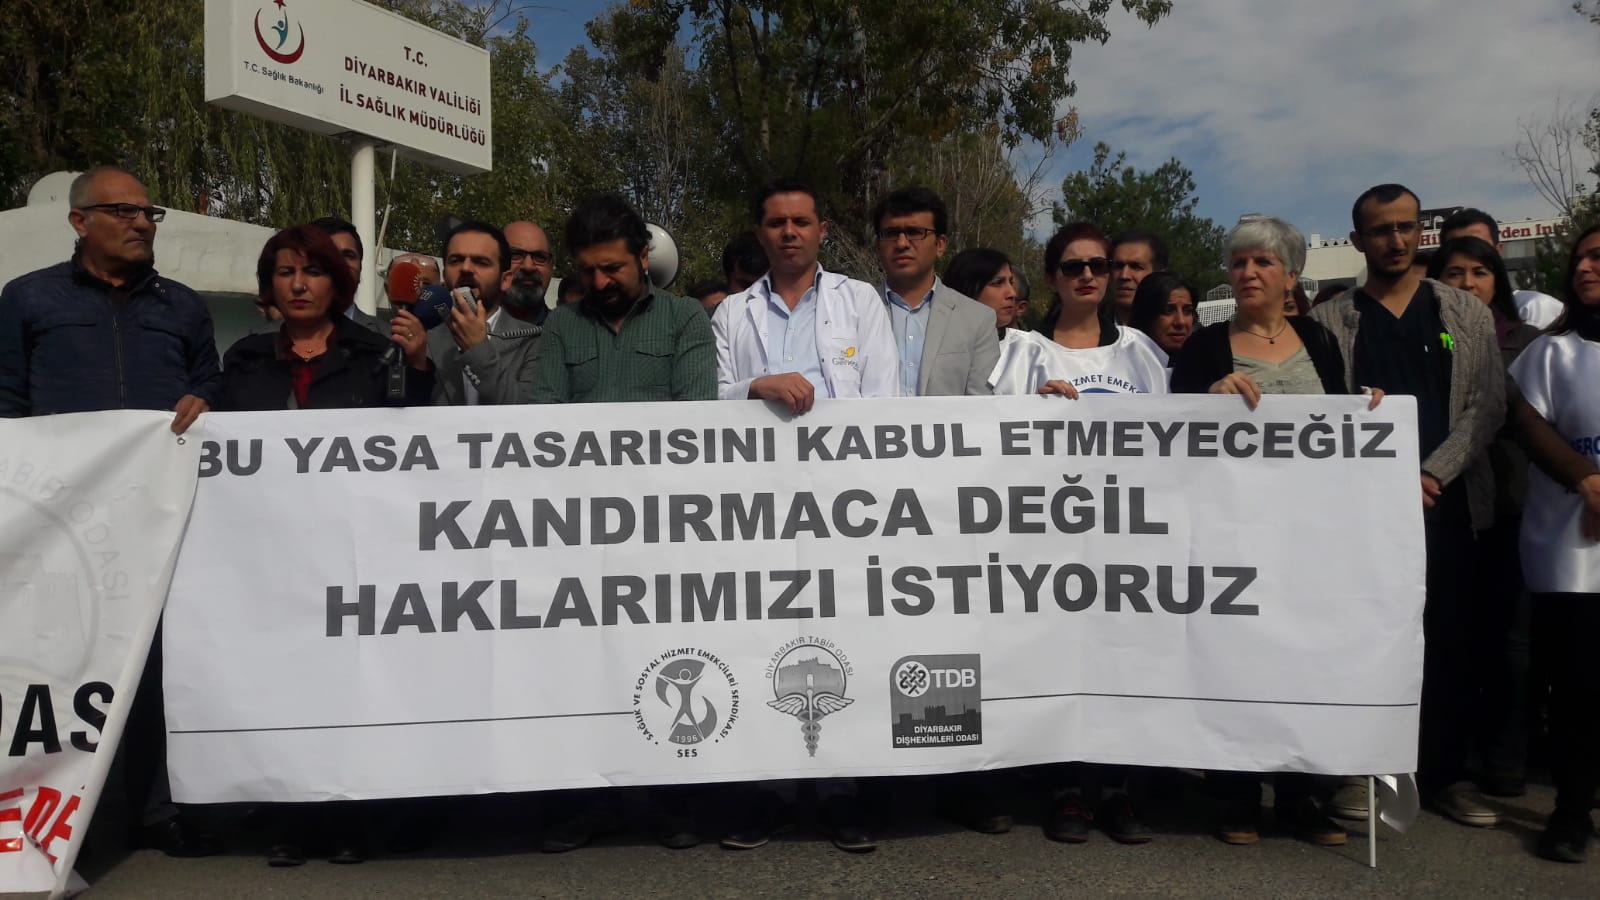 Diyarbakır: Bu Yasa Tasarısını Kabul Etmeyeceğiz, Kandırmaca Değil Haklarımızı İstiyoruz